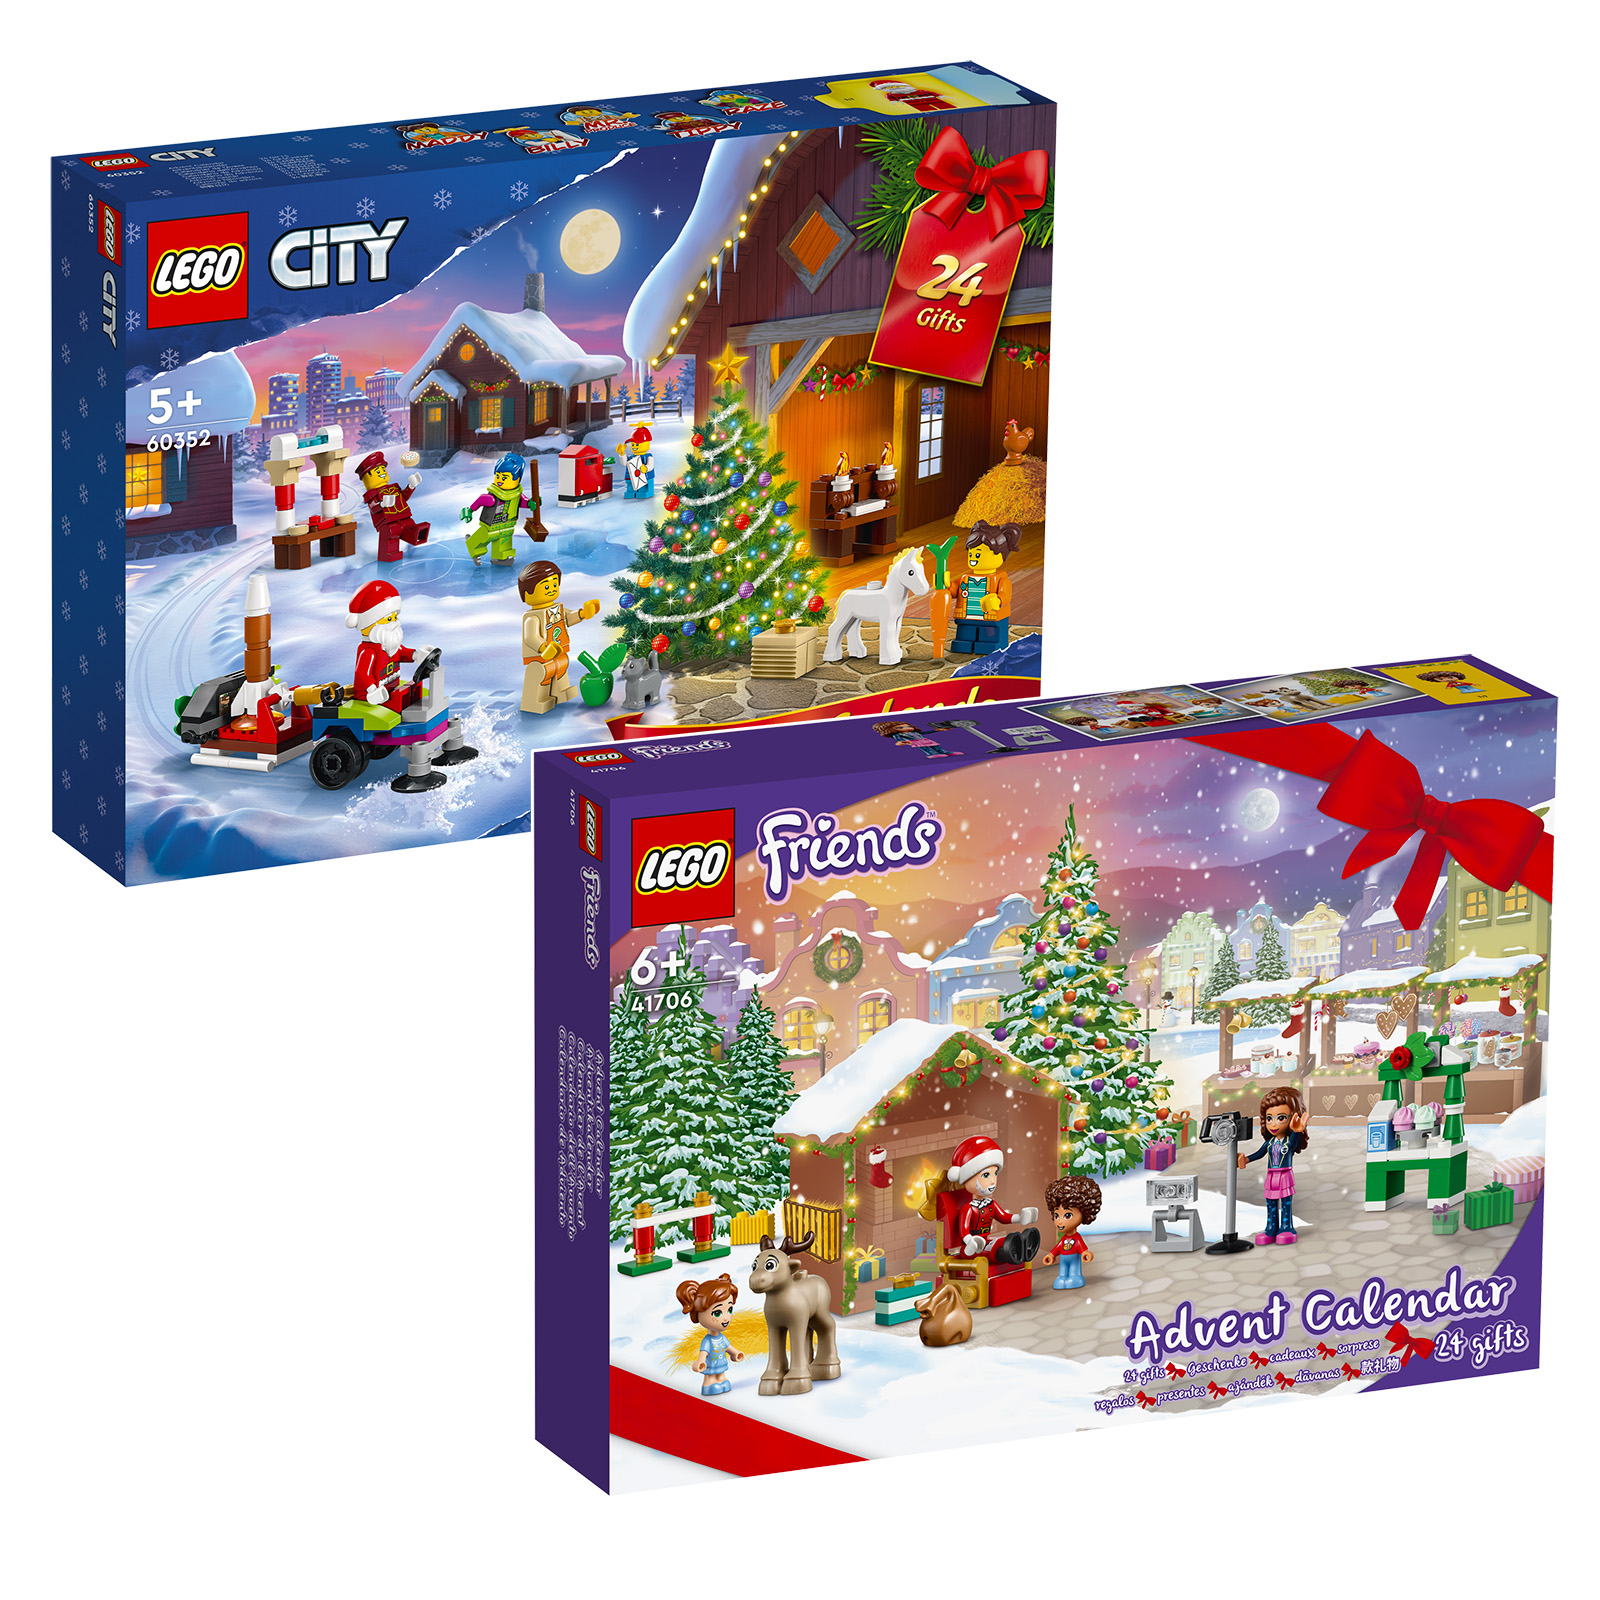 Adventski kalendari 2022 LEGO CITY & Friends: setovi su online u trgovini